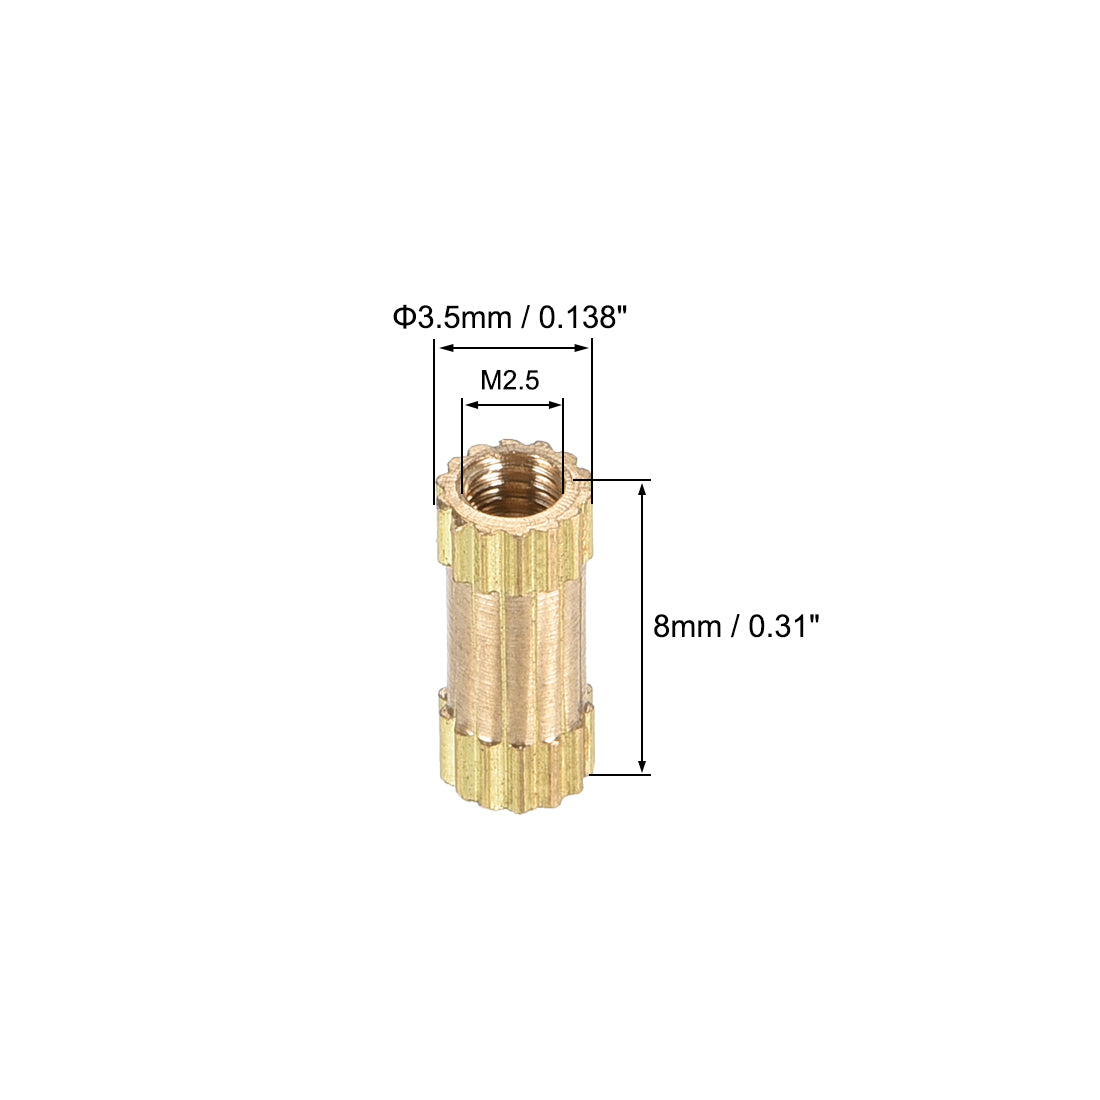 uxcell Uxcell Knurled Insert Nuts, M2.5 x 8mm(L) x 3.5mm(OD) Female Thread Brass Embedment Assortment Kit, 100 Pcs